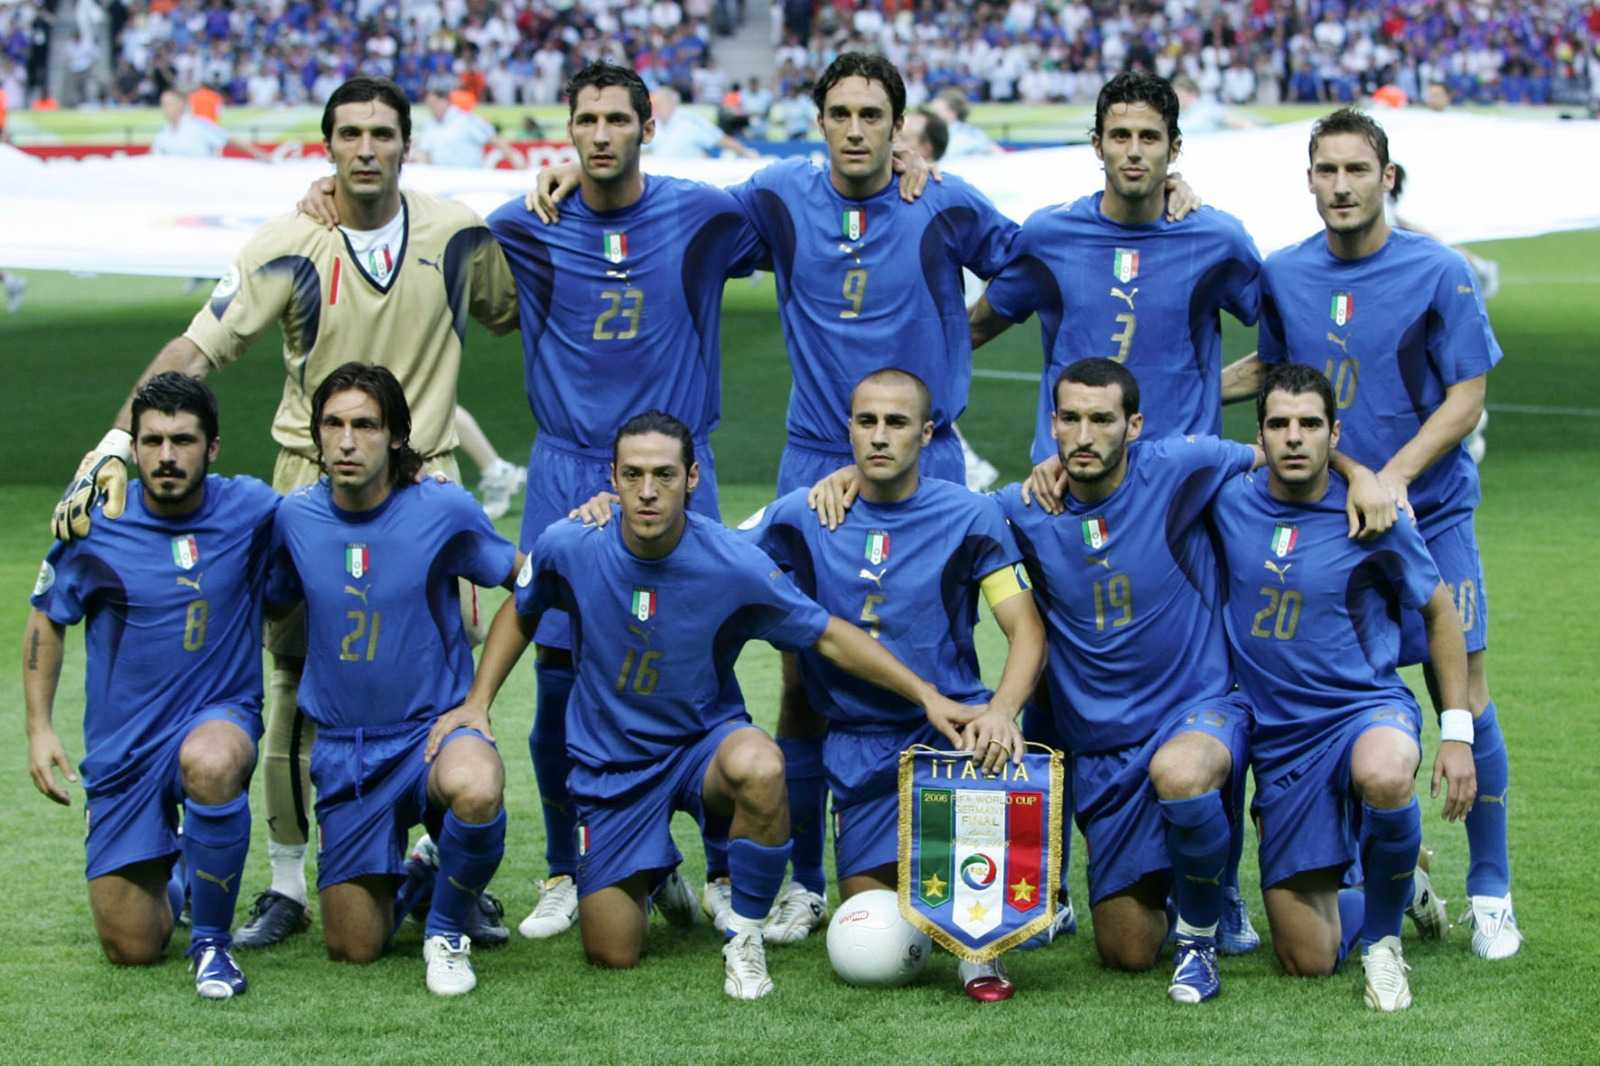 9 Luglio 2006, la notte della rivincita dell'Italia